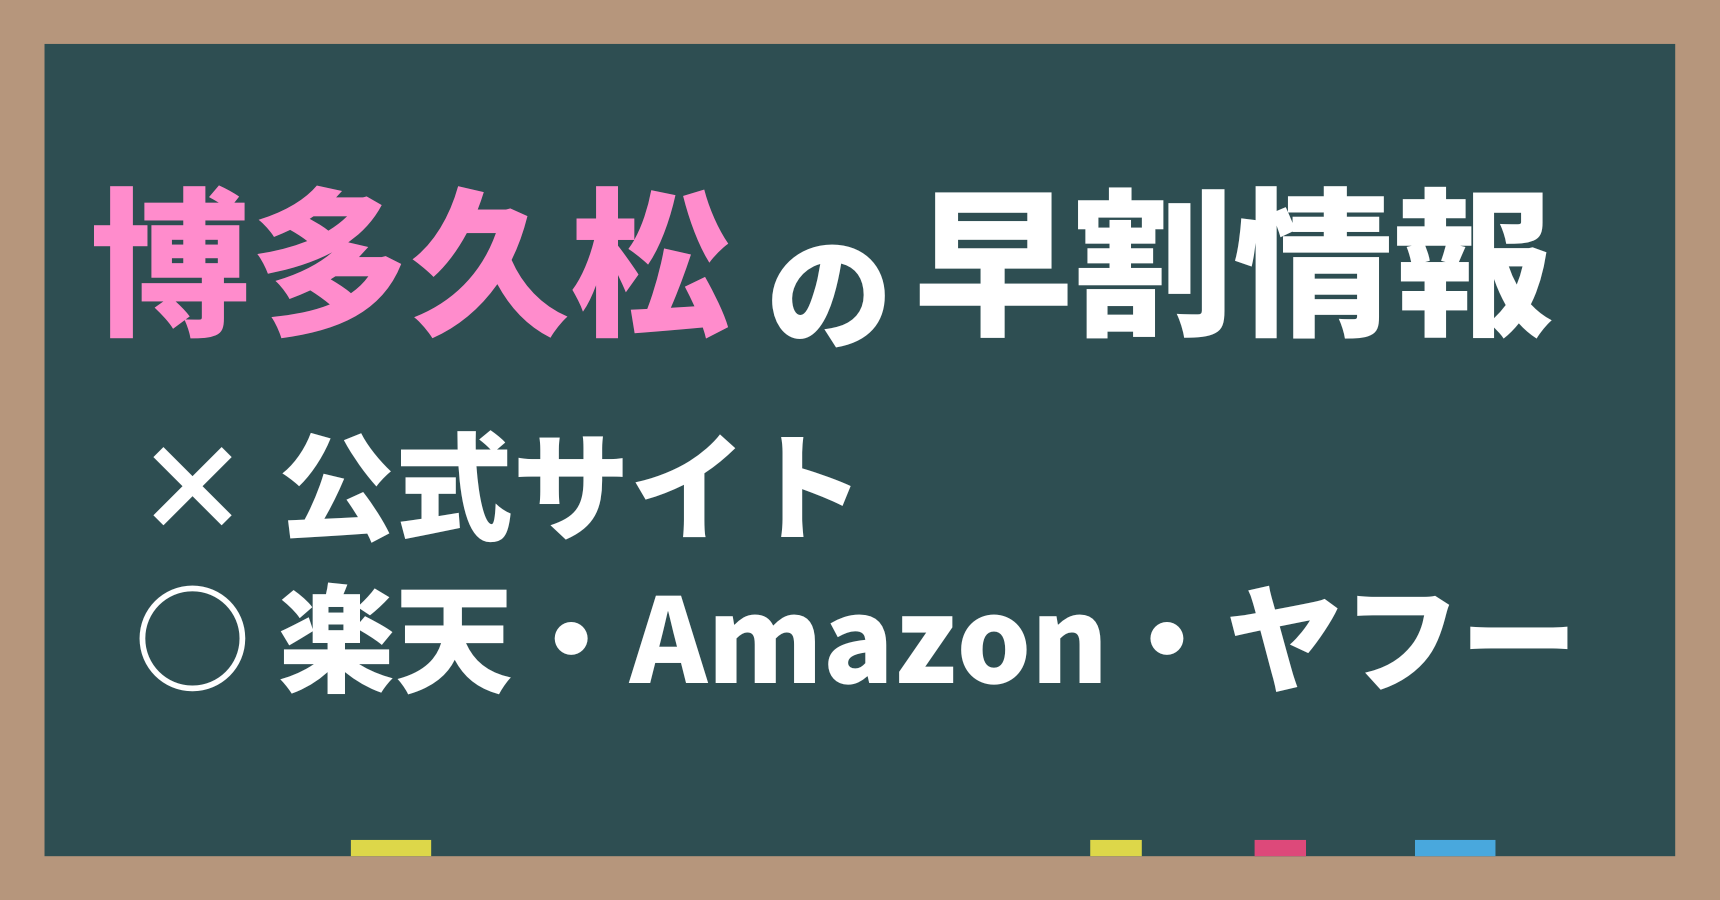 博多久松の早割は公式サイトでは実施されない。ただし、楽天、Amazon、ヤフーは実施される。